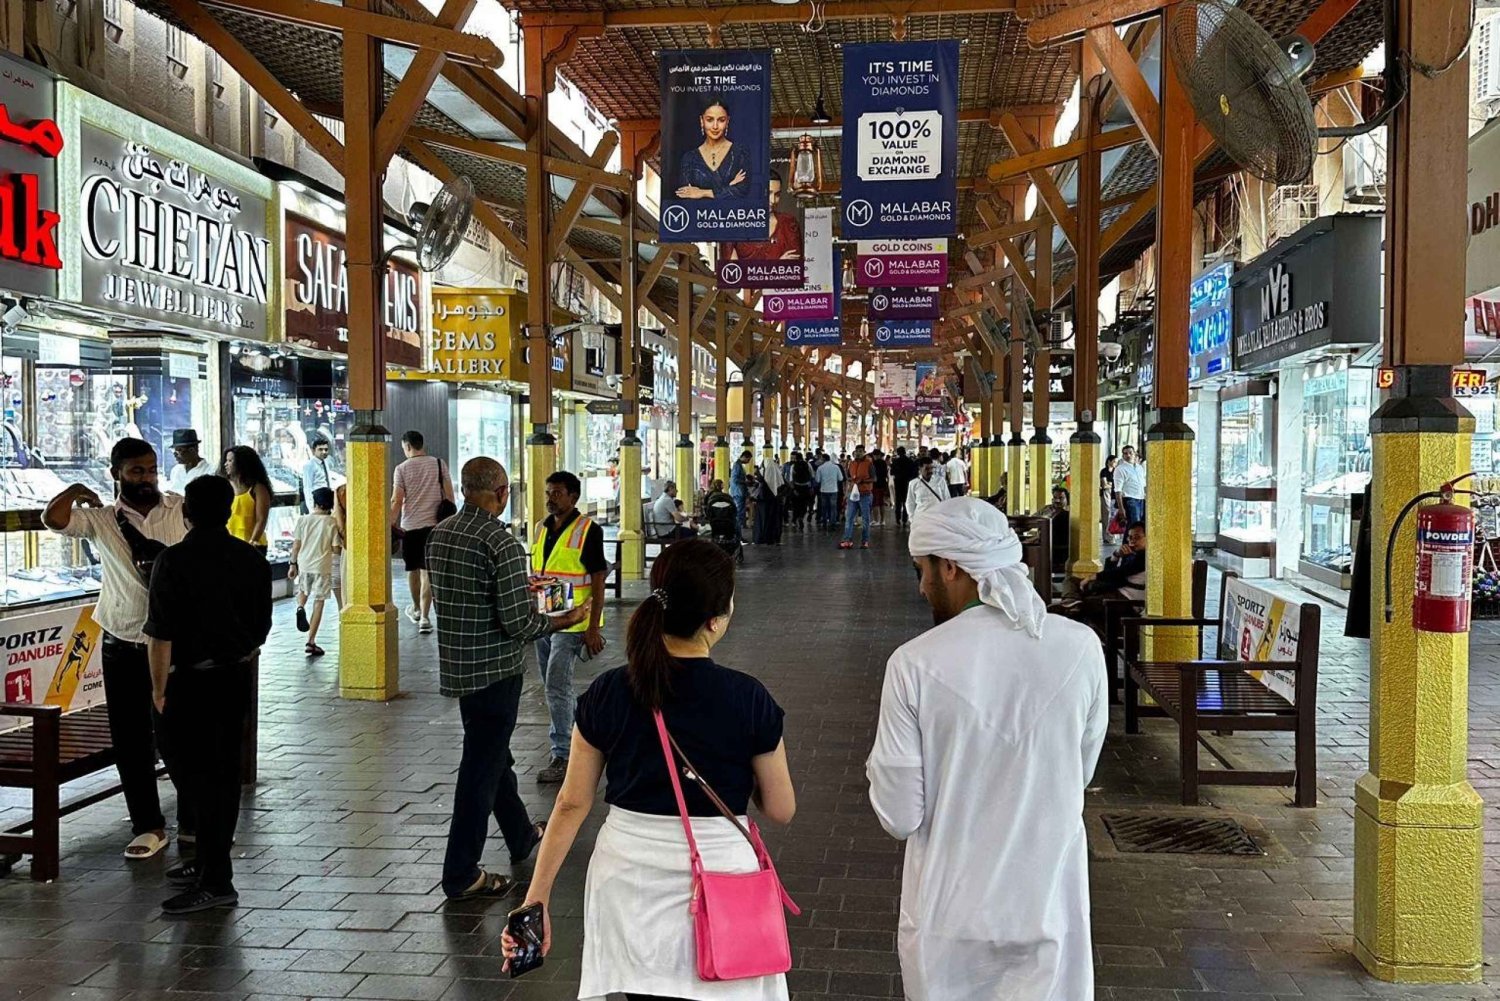 Wycieczka piesza po Dubaju. Souks, muzea, testowanie lokalnej żywności